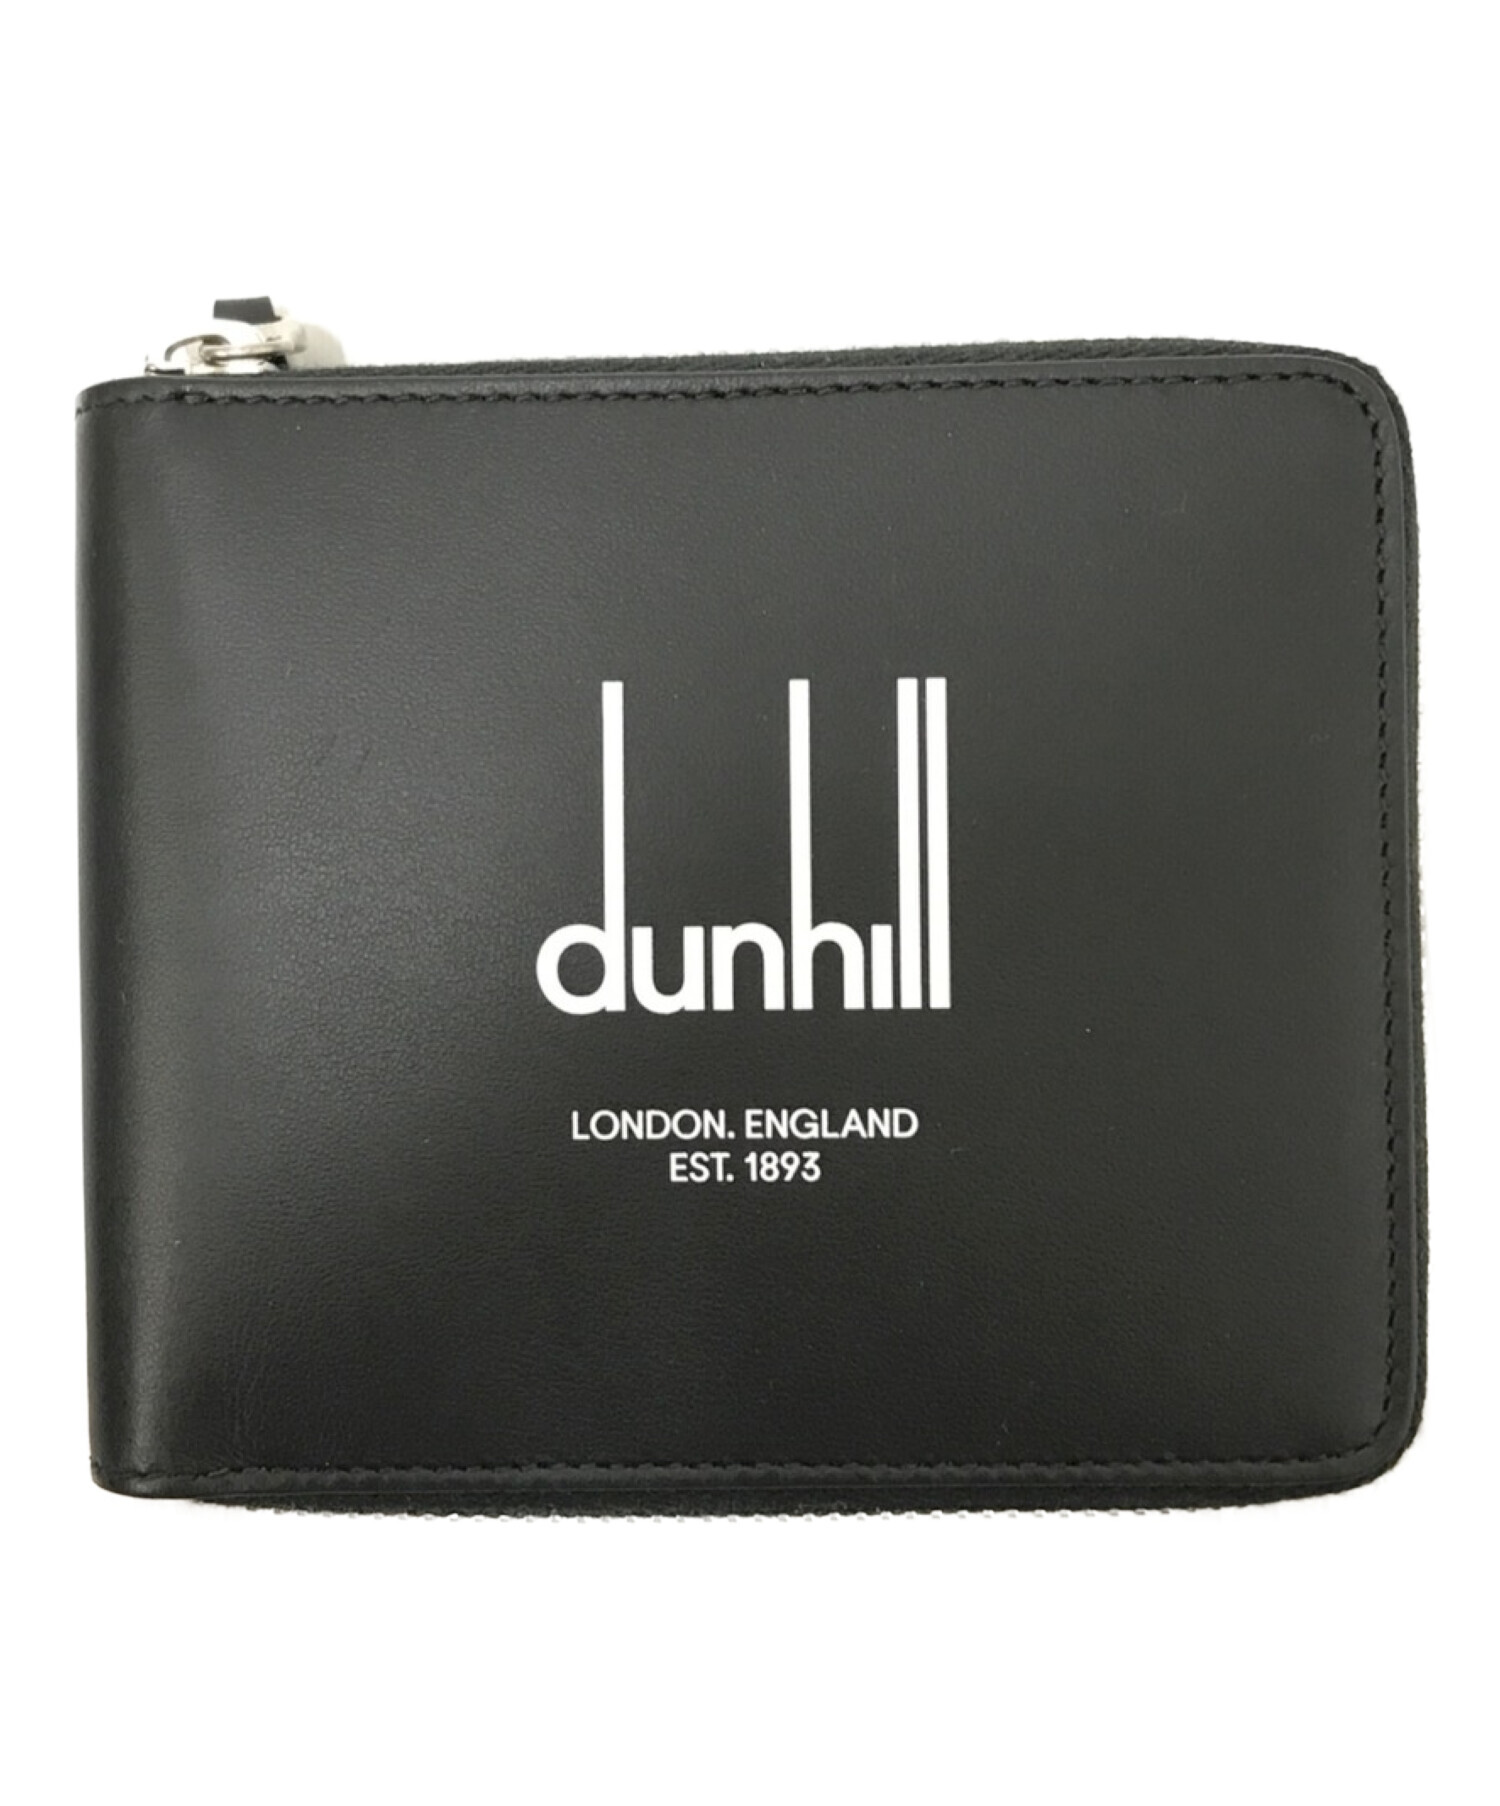 dunhill (ダンヒル) LEGACY 2つ折り財布 ブラック サイズ:下記参照